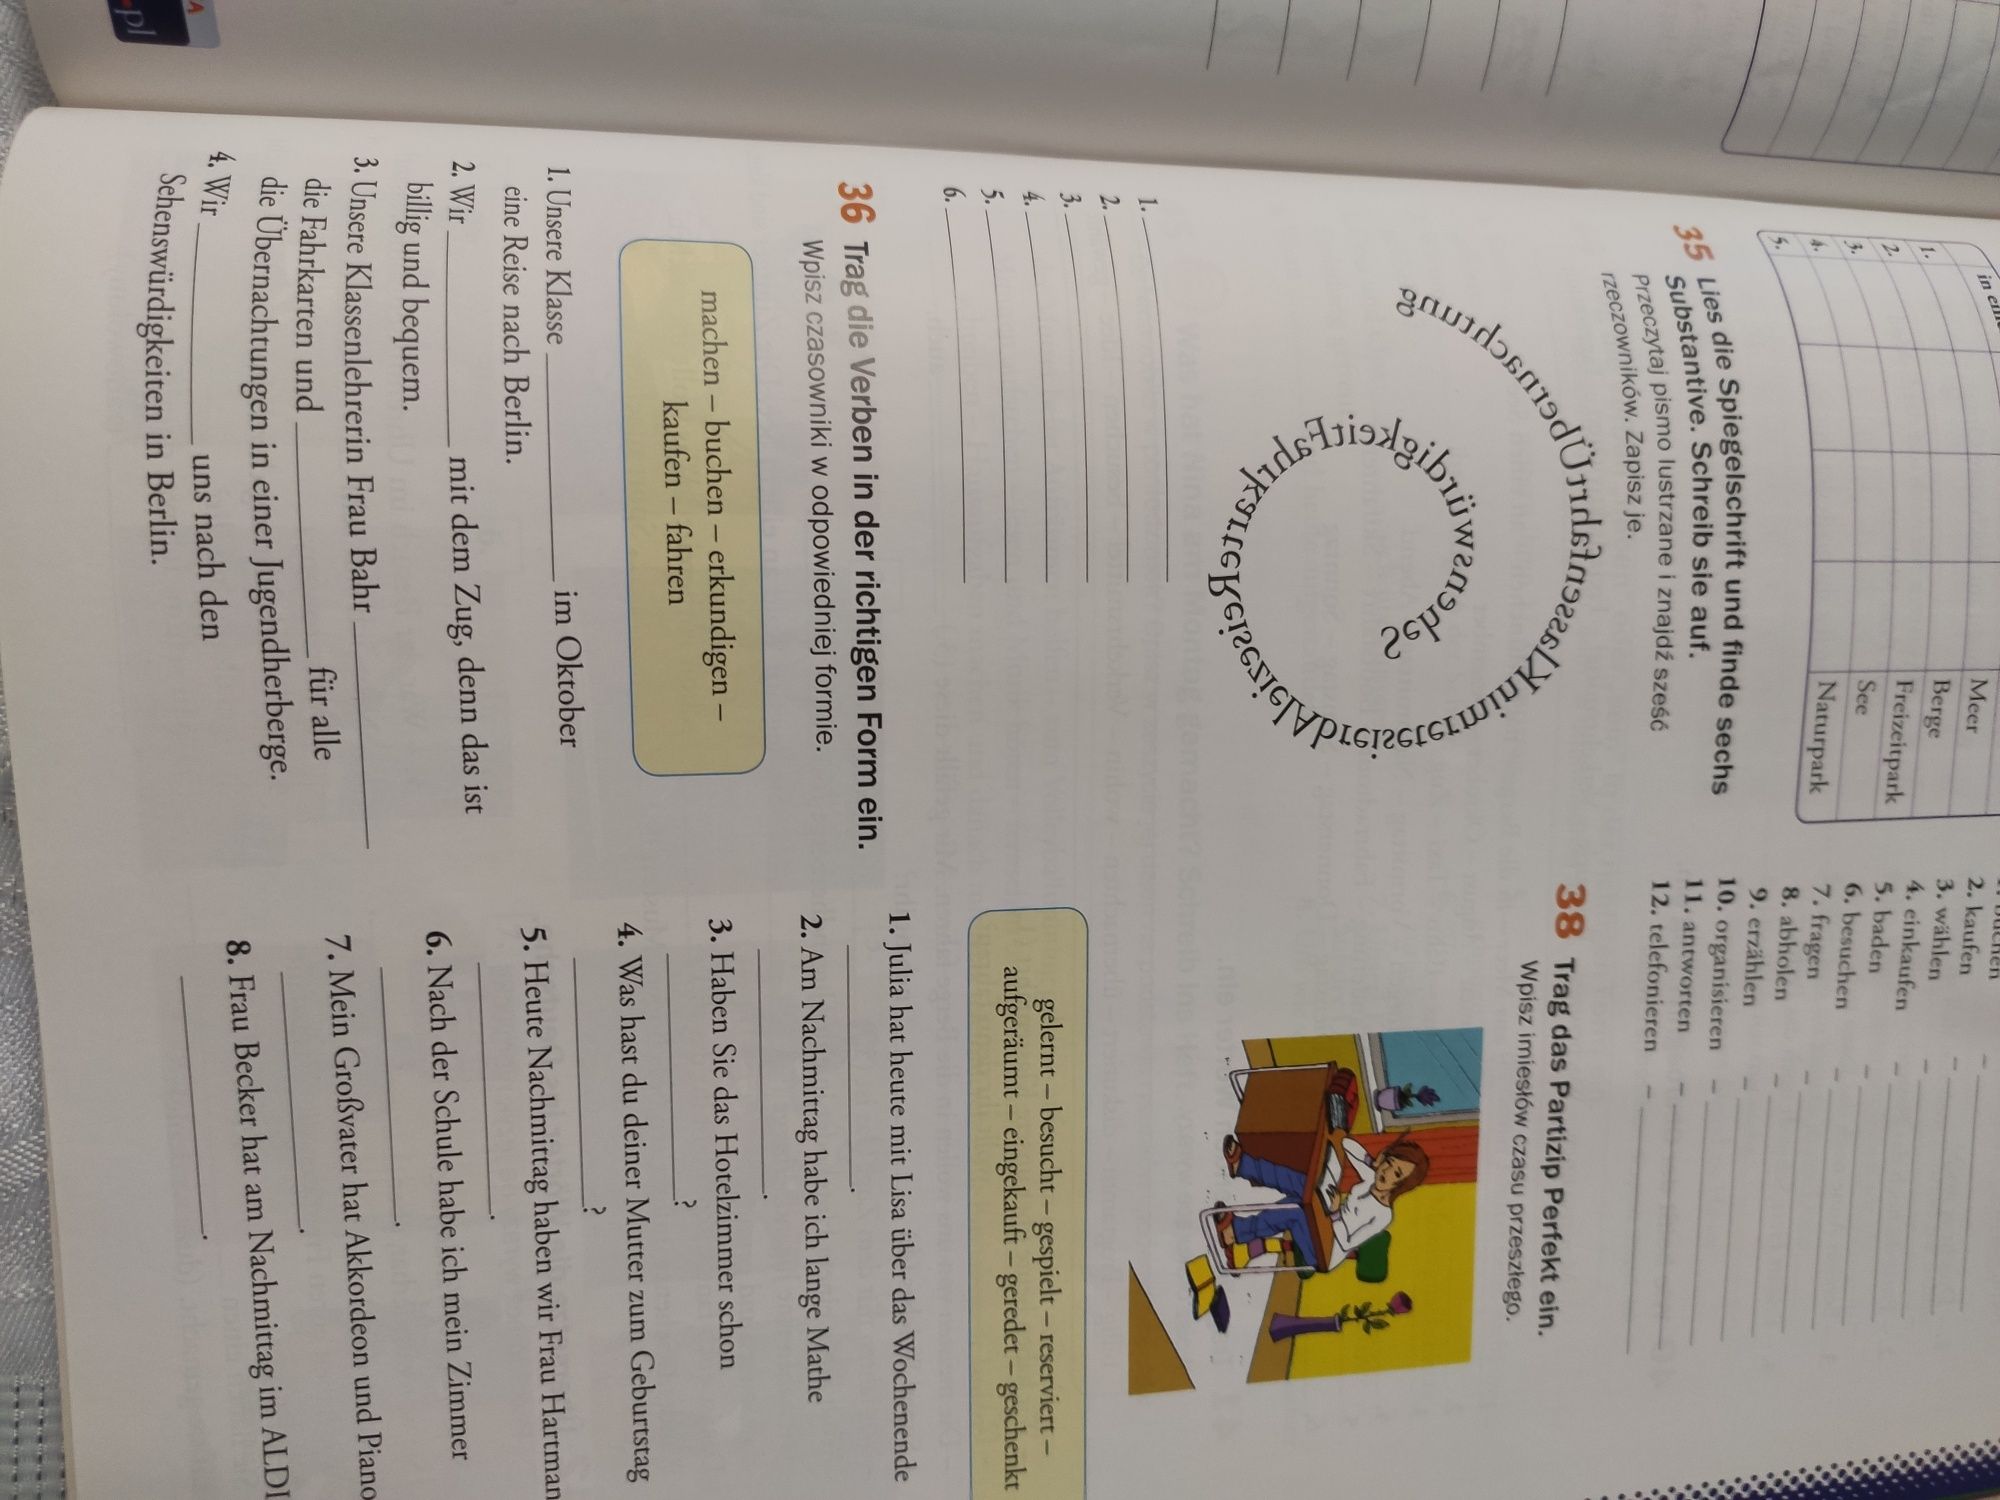 Motive Deutsch język niemiecki podręcznik z ćwiczeniami WSiP